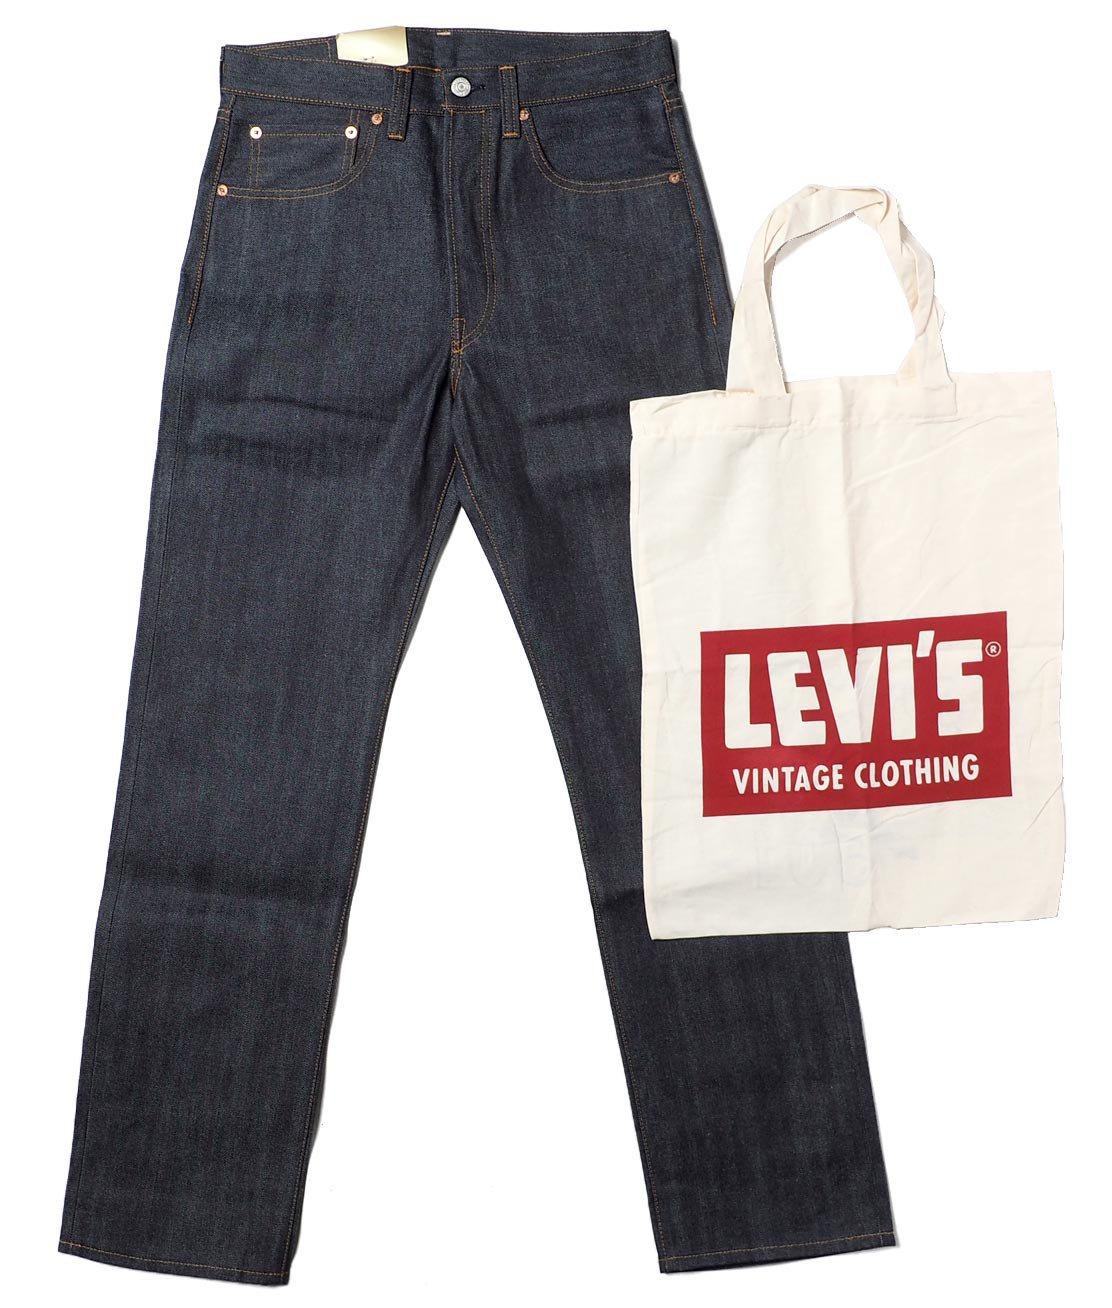 【LEVI'S VINTAGE CLOTHING】1947 501XX JEANS - RIGID リジッドジーンズ デニム リーバイス -  HUNKY DORY | LEVI'S VINTAGE CLOTHING、JACKMAN、CHAMPIONなどのブランドを主に扱うセレクトショップ 通販